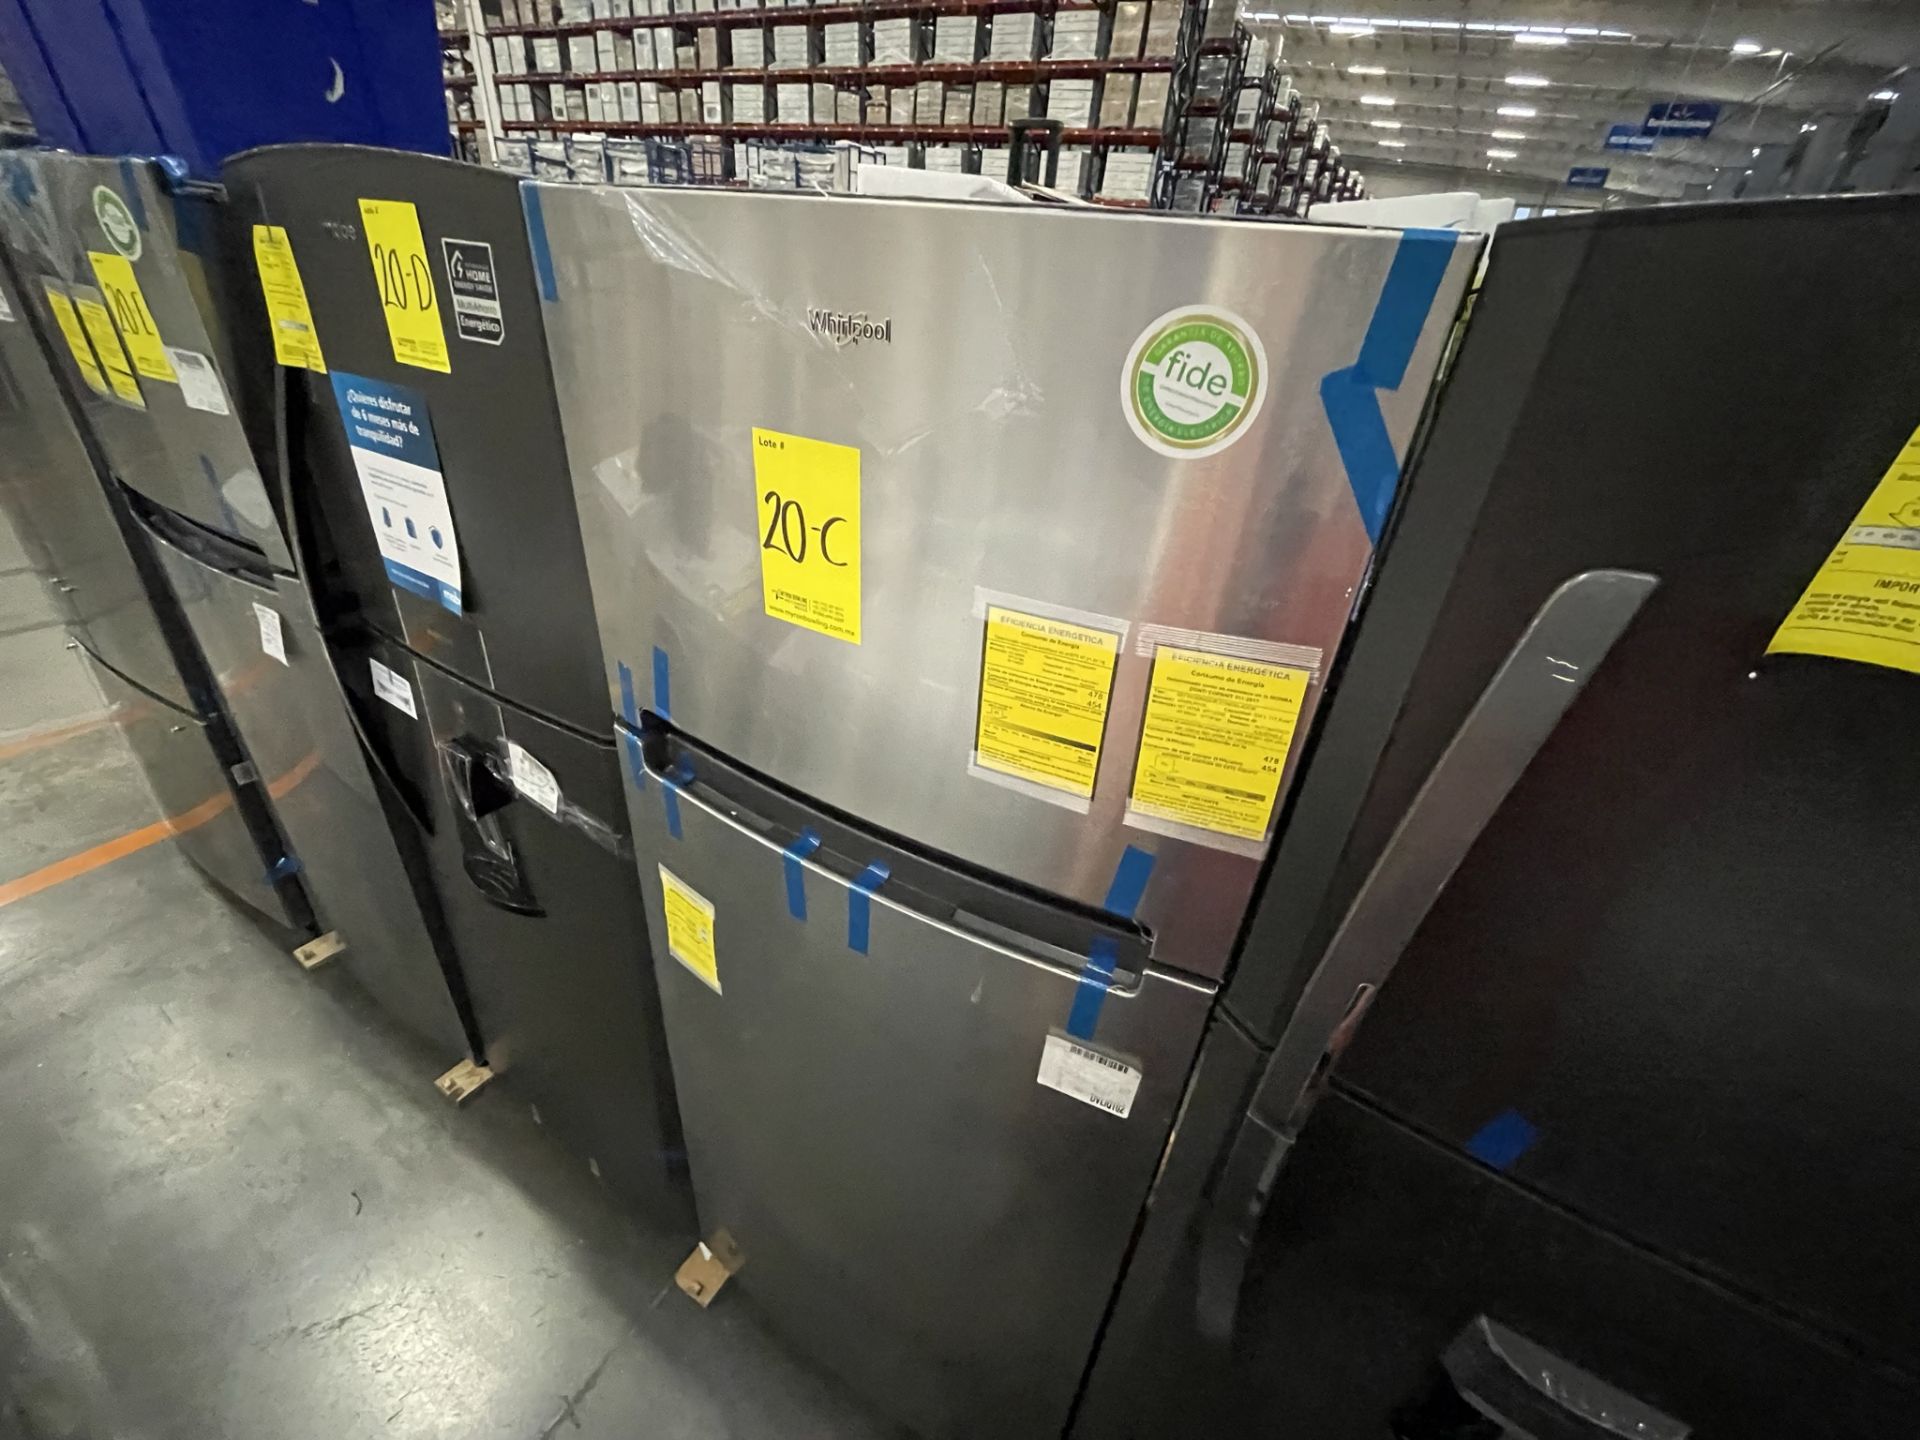 (EQUIPO NUEVO) 1 Refrigerador Marca Whirlpool, Modelo WT1818A, Serie VSB3060855, Color Gris, LB- 62 - Image 4 of 7